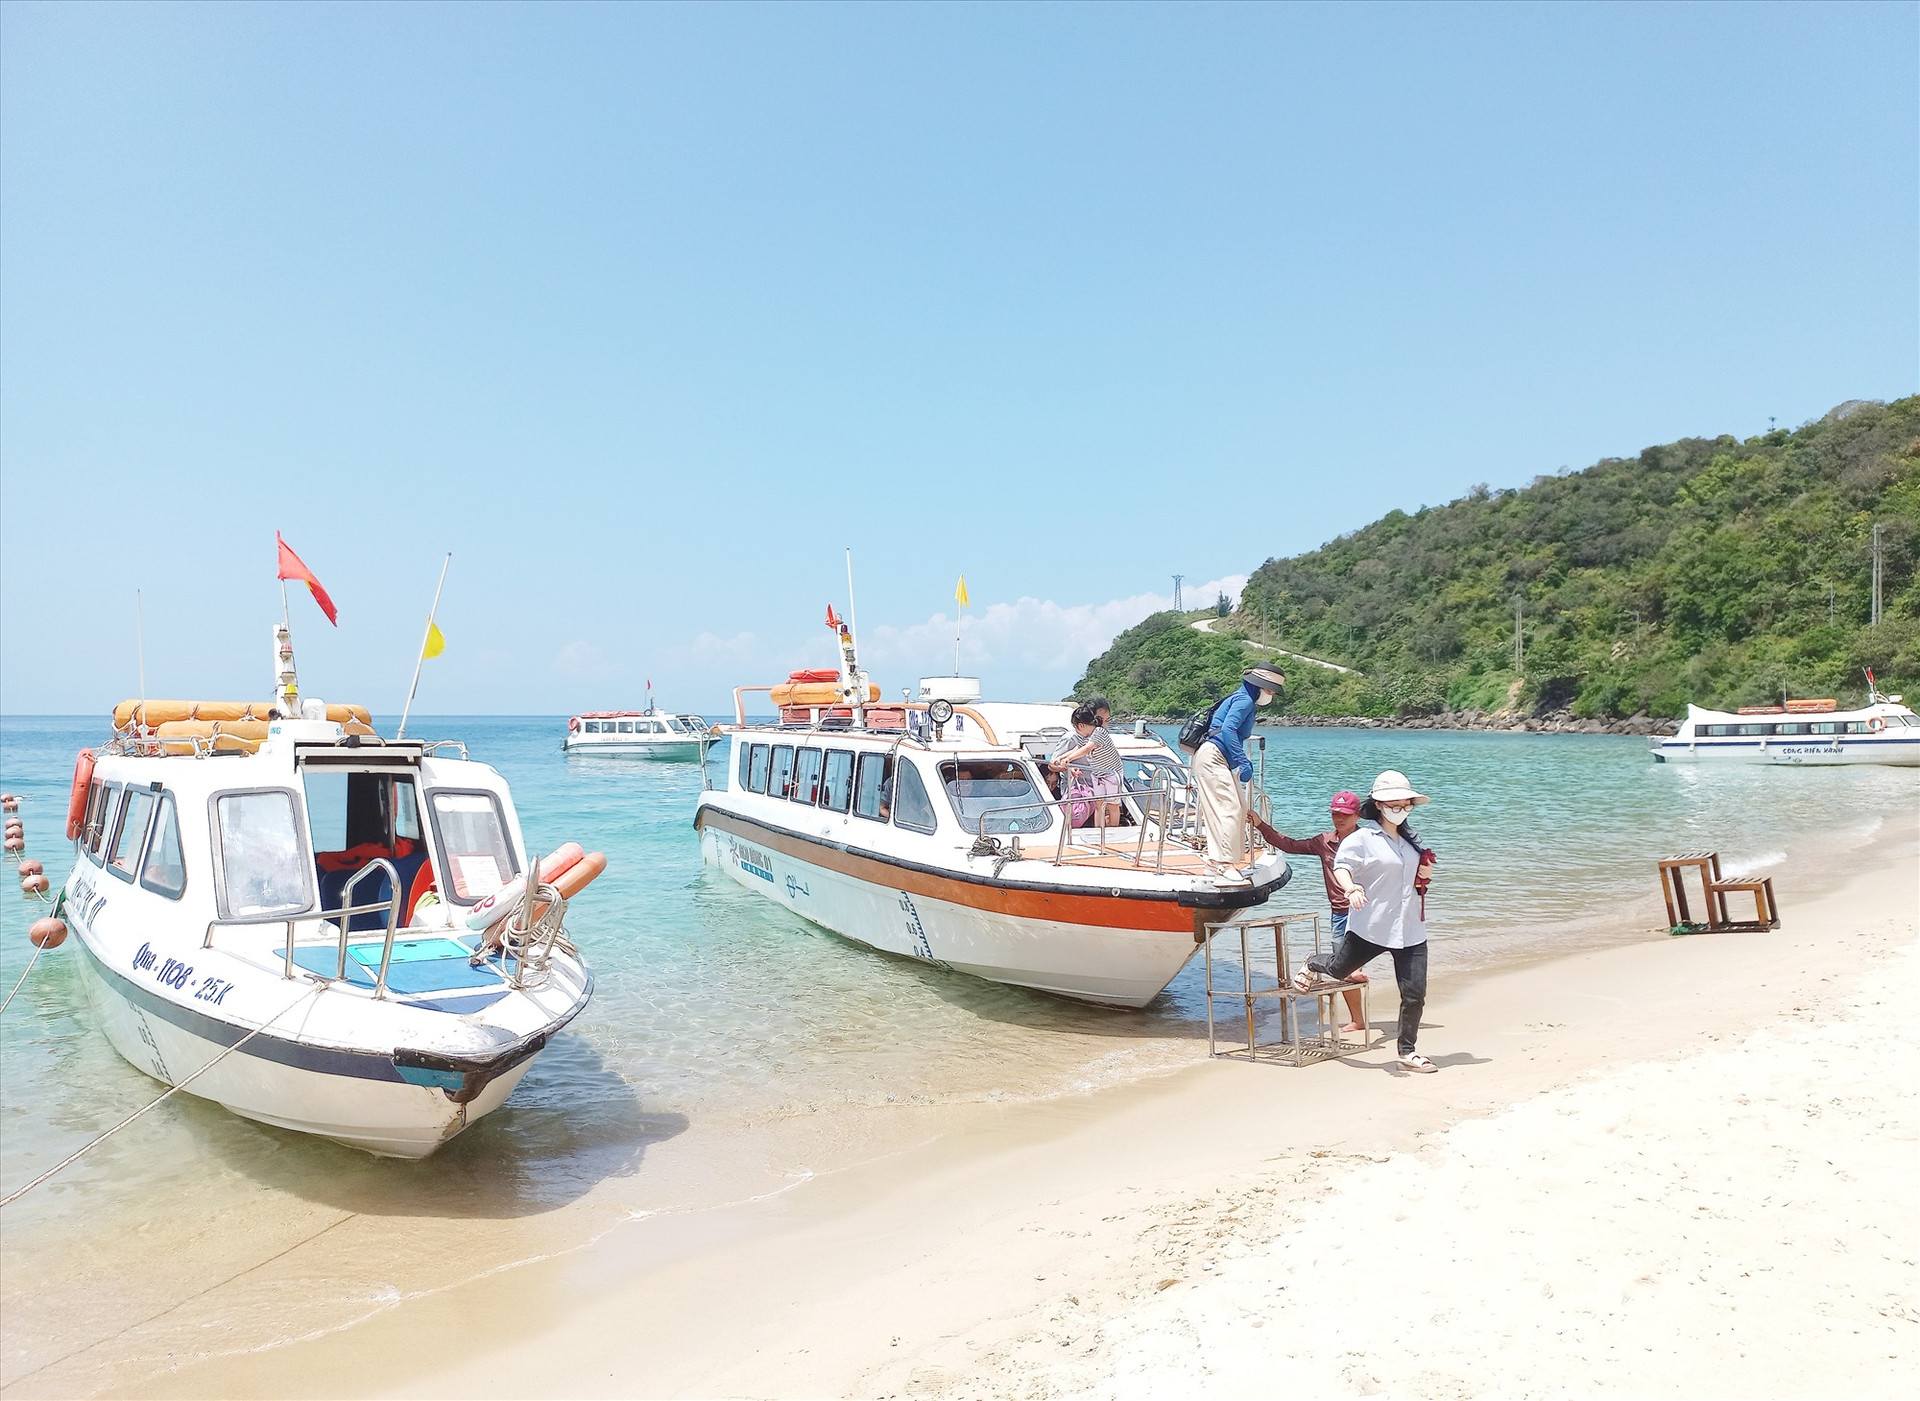 Phương tiện chở khách tuyến Cửa Đại - Cù Lao Chàm lại cập bờ vào Bãi Ông, nơi chưa được công bố bến thủy nội địa.